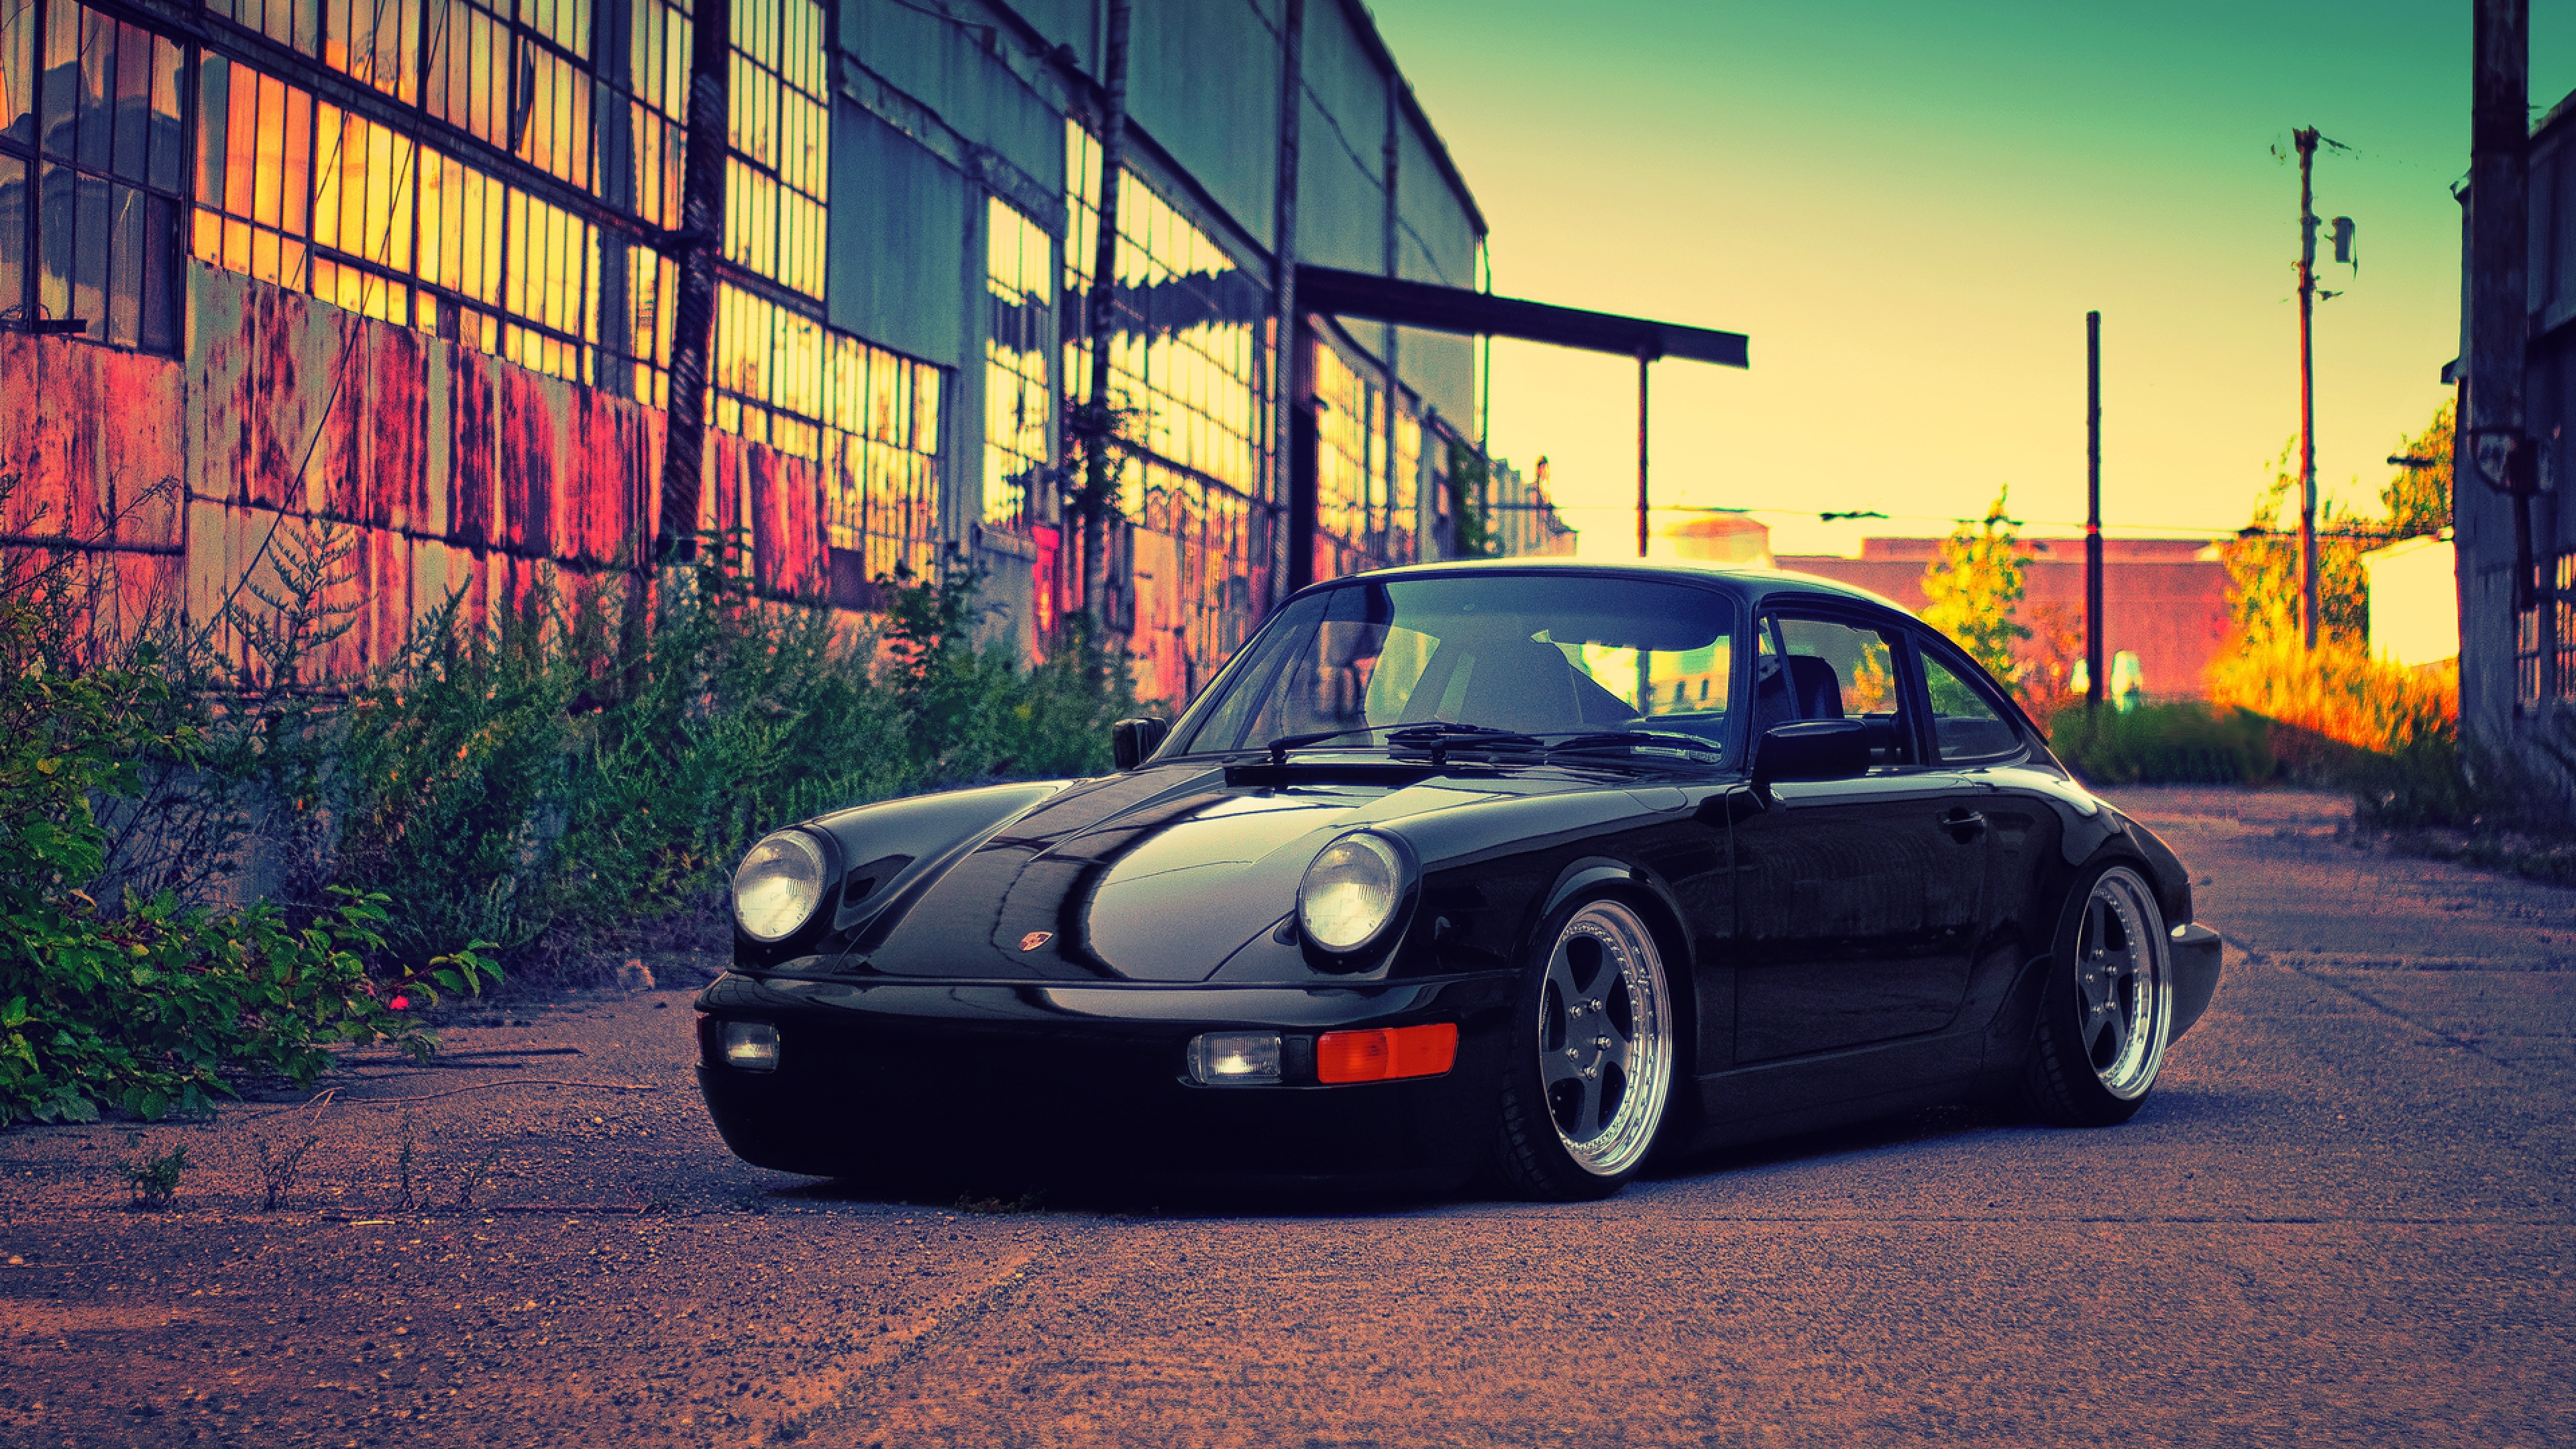 3840x2160 Porsche Black